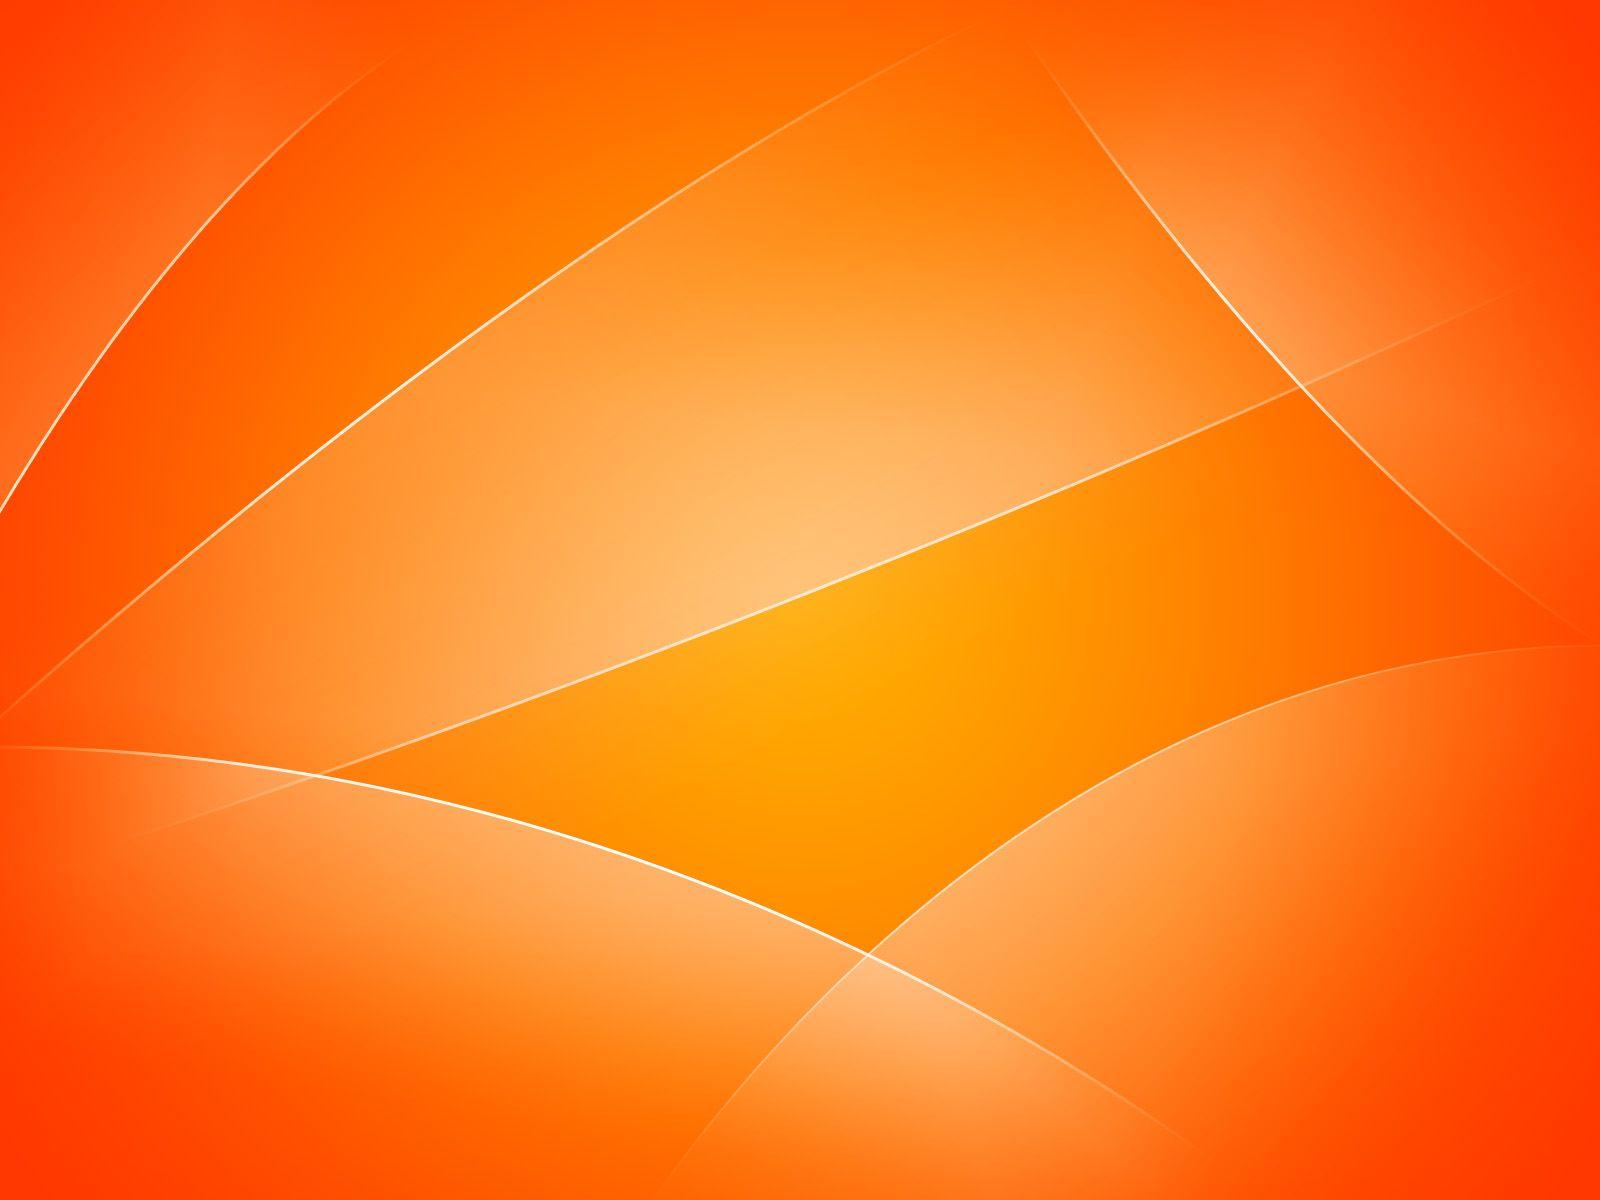 Hình nền trừu tượng màu cam: Bạn đang tìm kiếm một hình nền trừu tượng màu cam để làm nền cho máy tính hoặc điện thoại của mình? Các mẫu thiết kế trong bộ sưu tập của chúng tôi chắc chắn sẽ làm bạn hài lòng. Với sự kết hợp của các đường nét tinh tế và sắc màu cam rực rỡ, hình nền của bạn sẽ trở nên nổi bật và độc đáo hơn.